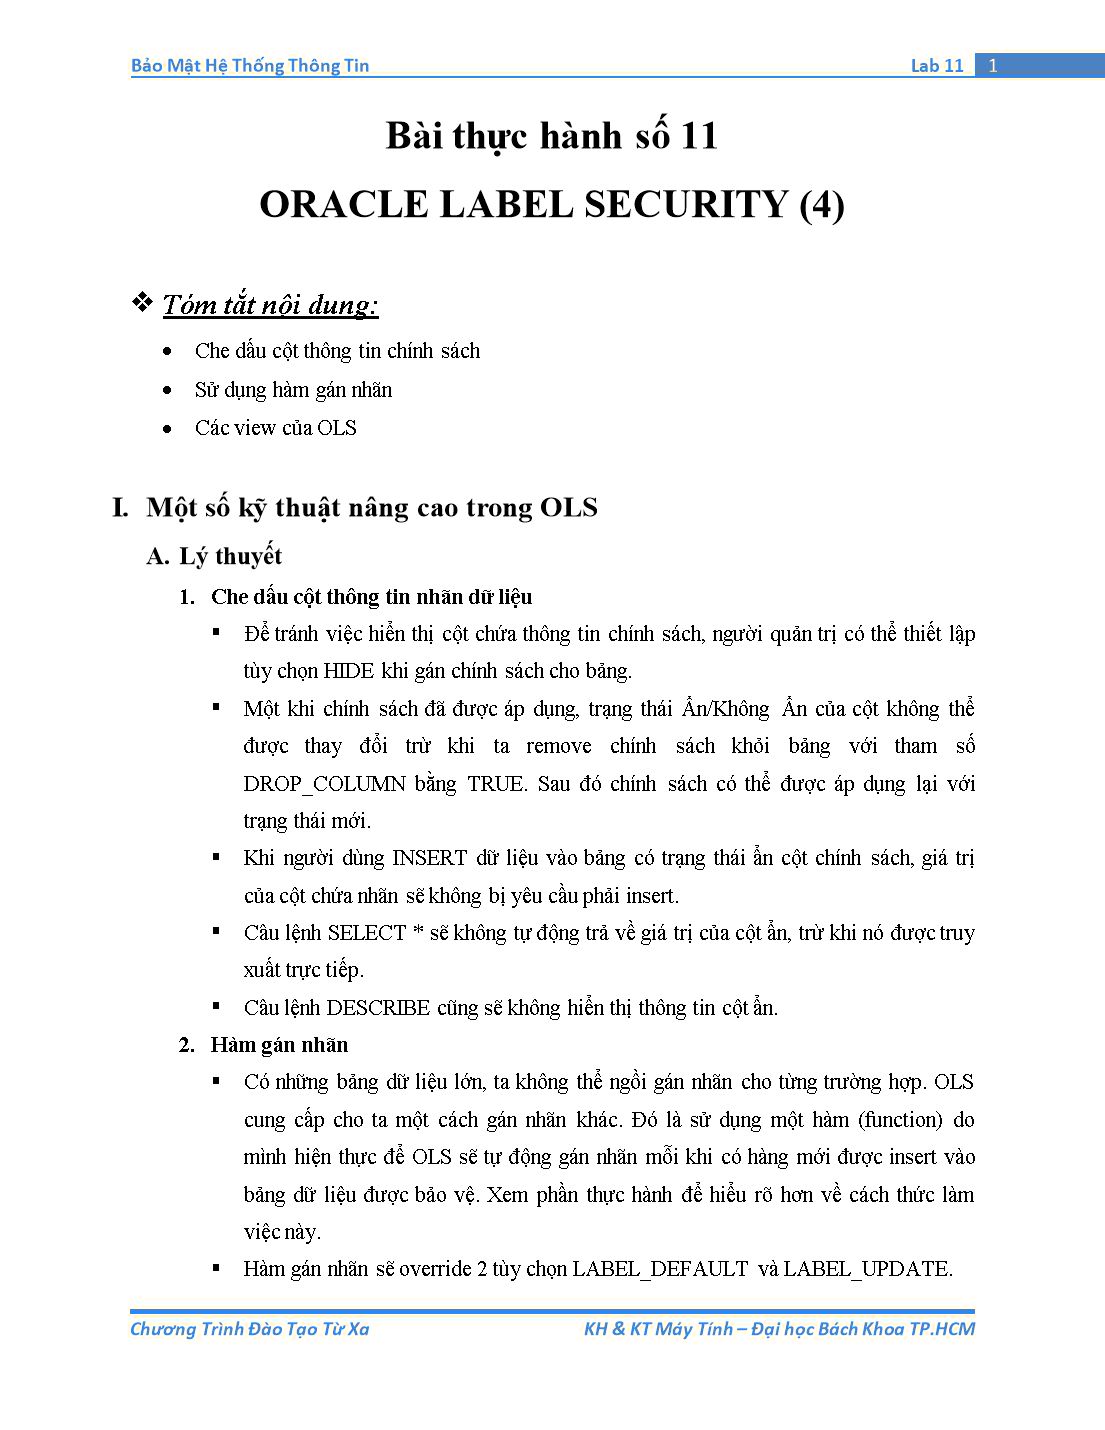 Tài liệu thực hành Bảo mật hệ thống thông tin - Bài thực hành số 11: Oracle Label Security (Phần 4) trang 1